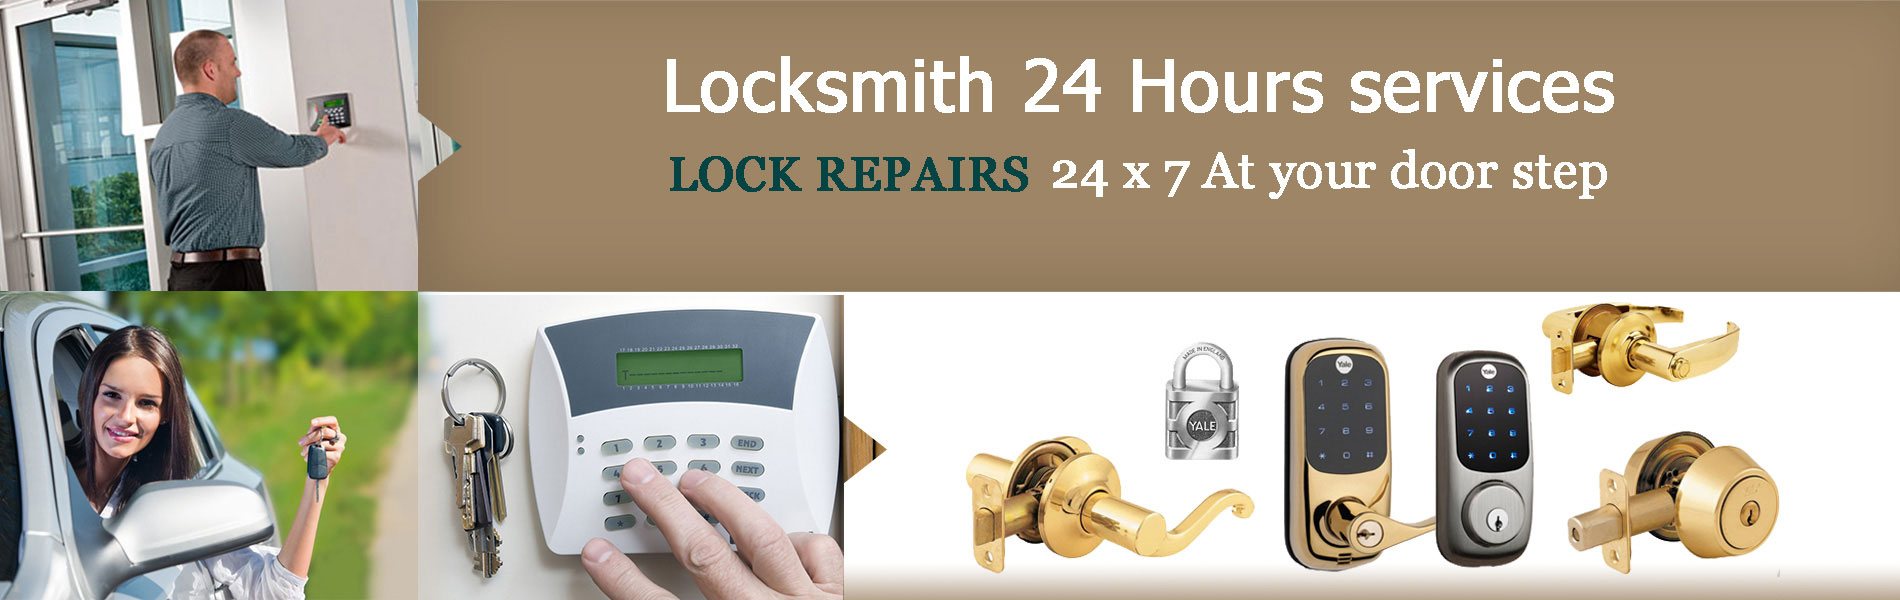 Elite Locksmith Services | Locksmith Around Me Philadelphia, PA |  215-716-7067